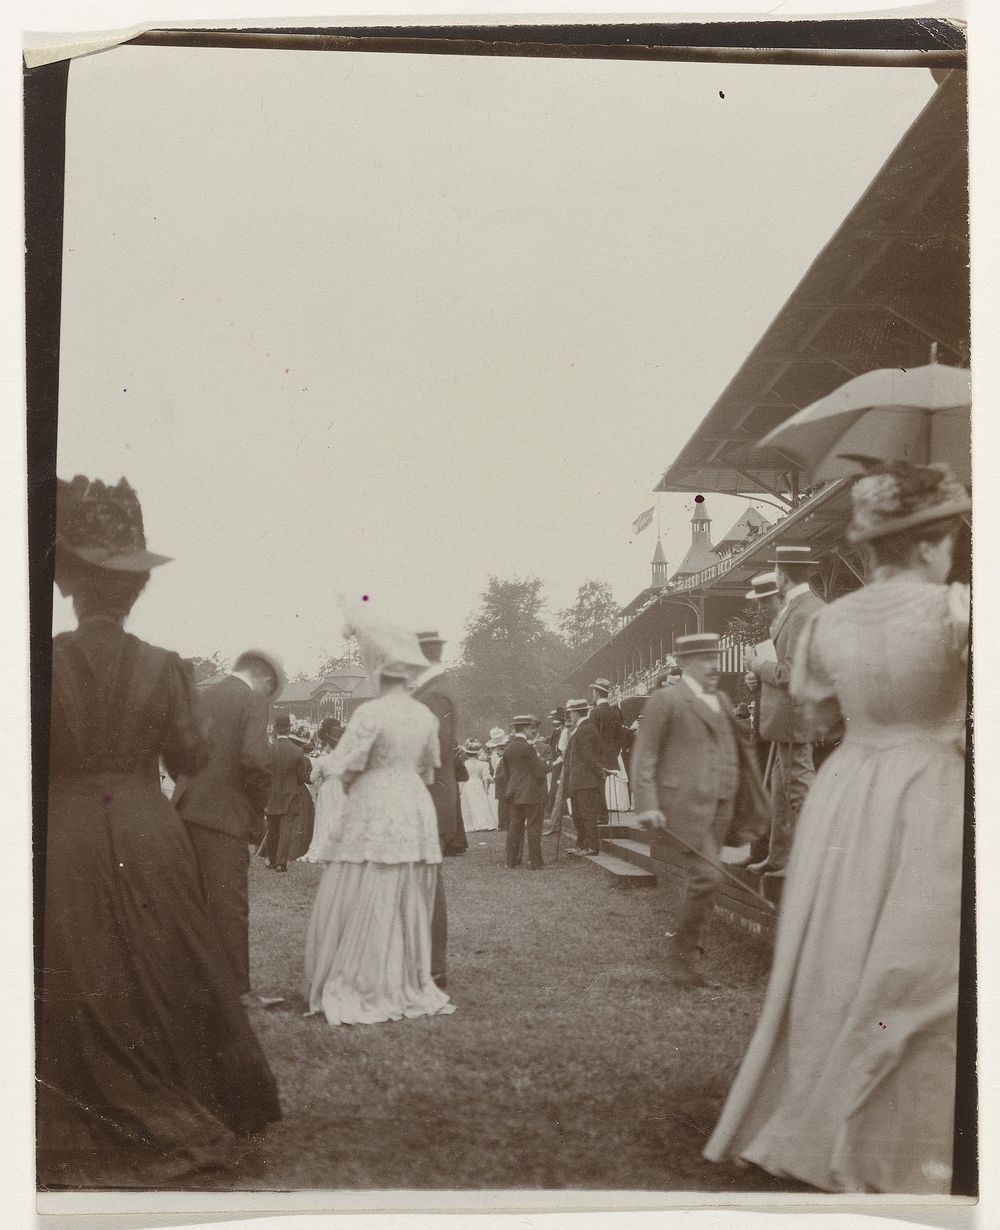 Bezoekers van een paardenrenbaan (c. 1900) by anonymous